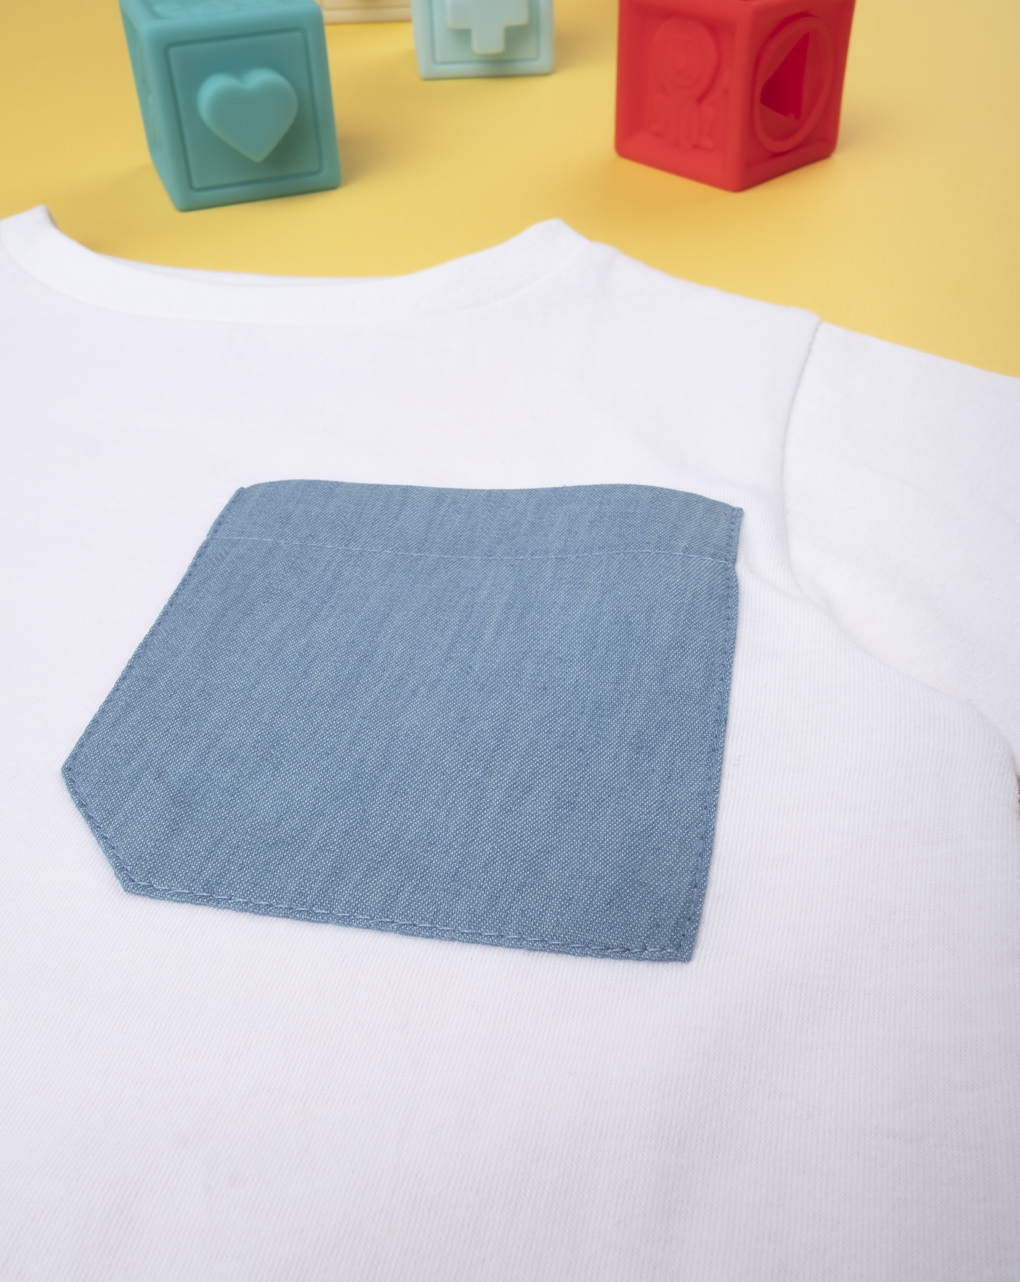 Camiseta menino branca e azul - Prénatal